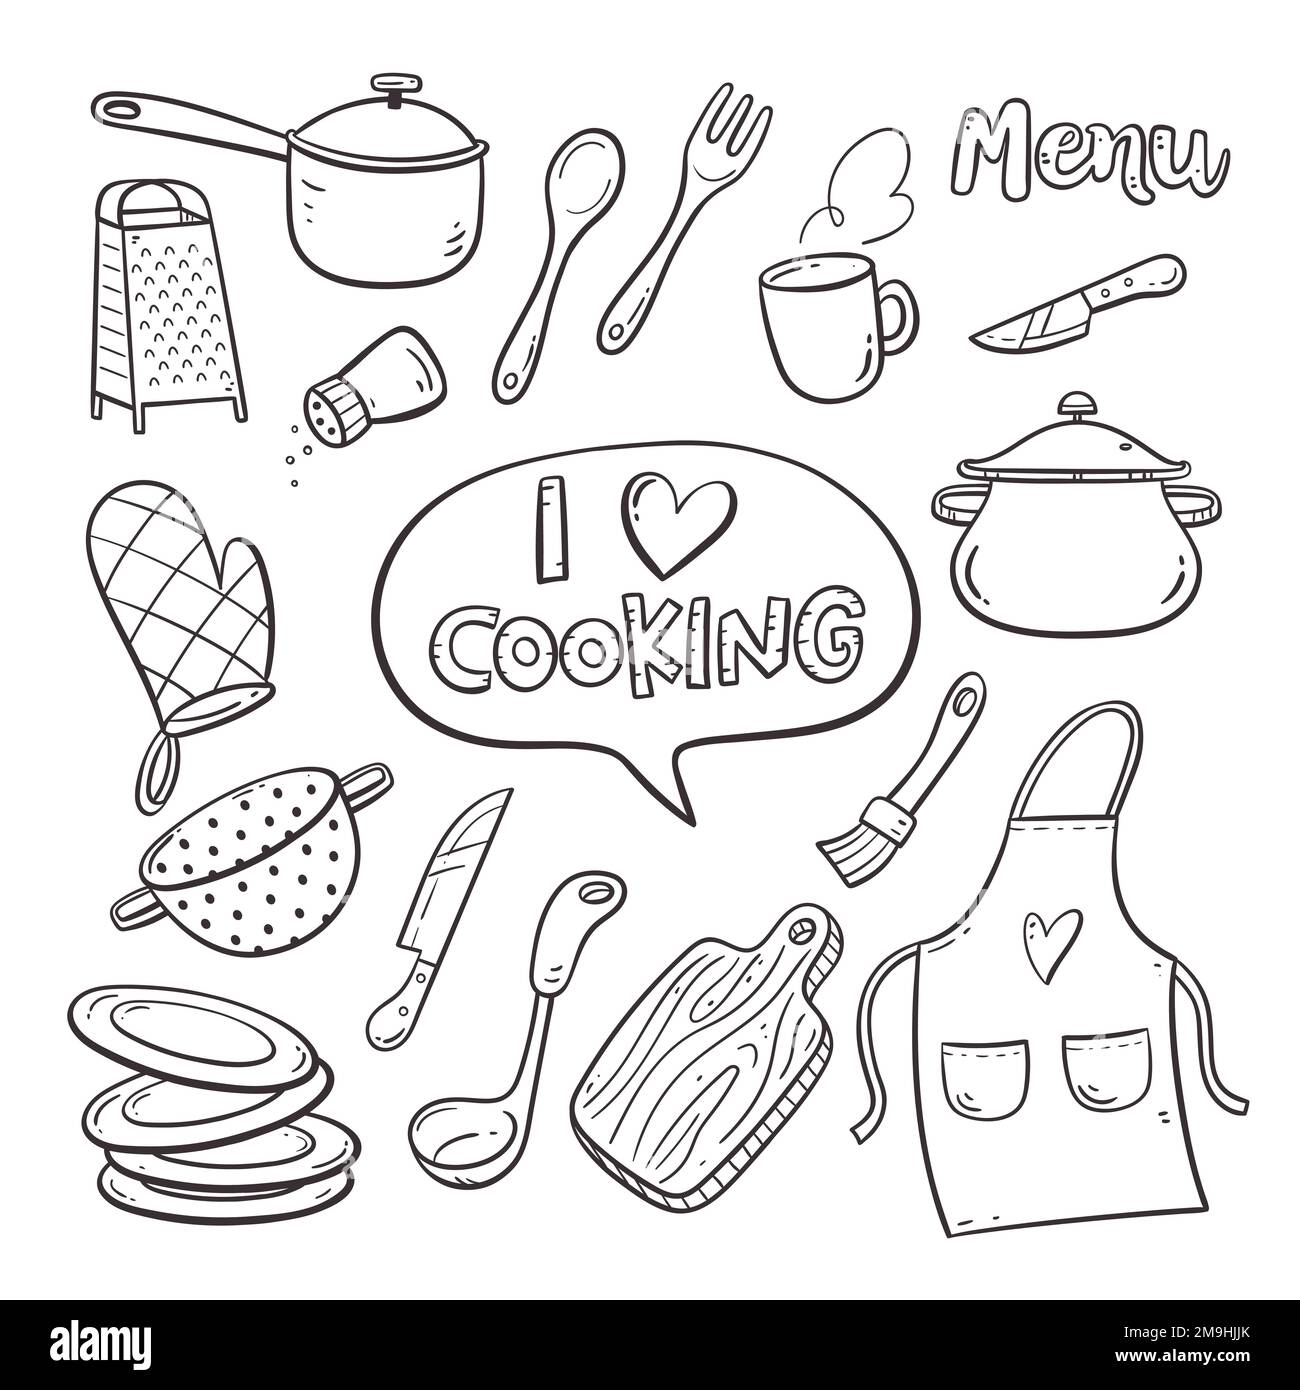 https://c8.alamy.com/compes/2m9hjjk/doodle-utensilios-de-cocina-y-electrodomesticos-linda-ilustracion-con-objetos-de-cocina-aislados-en-formato-vectorial-coleccion-de-utensilios-de-cocina-ilustracion-2-de-2m9hjjk.jpg